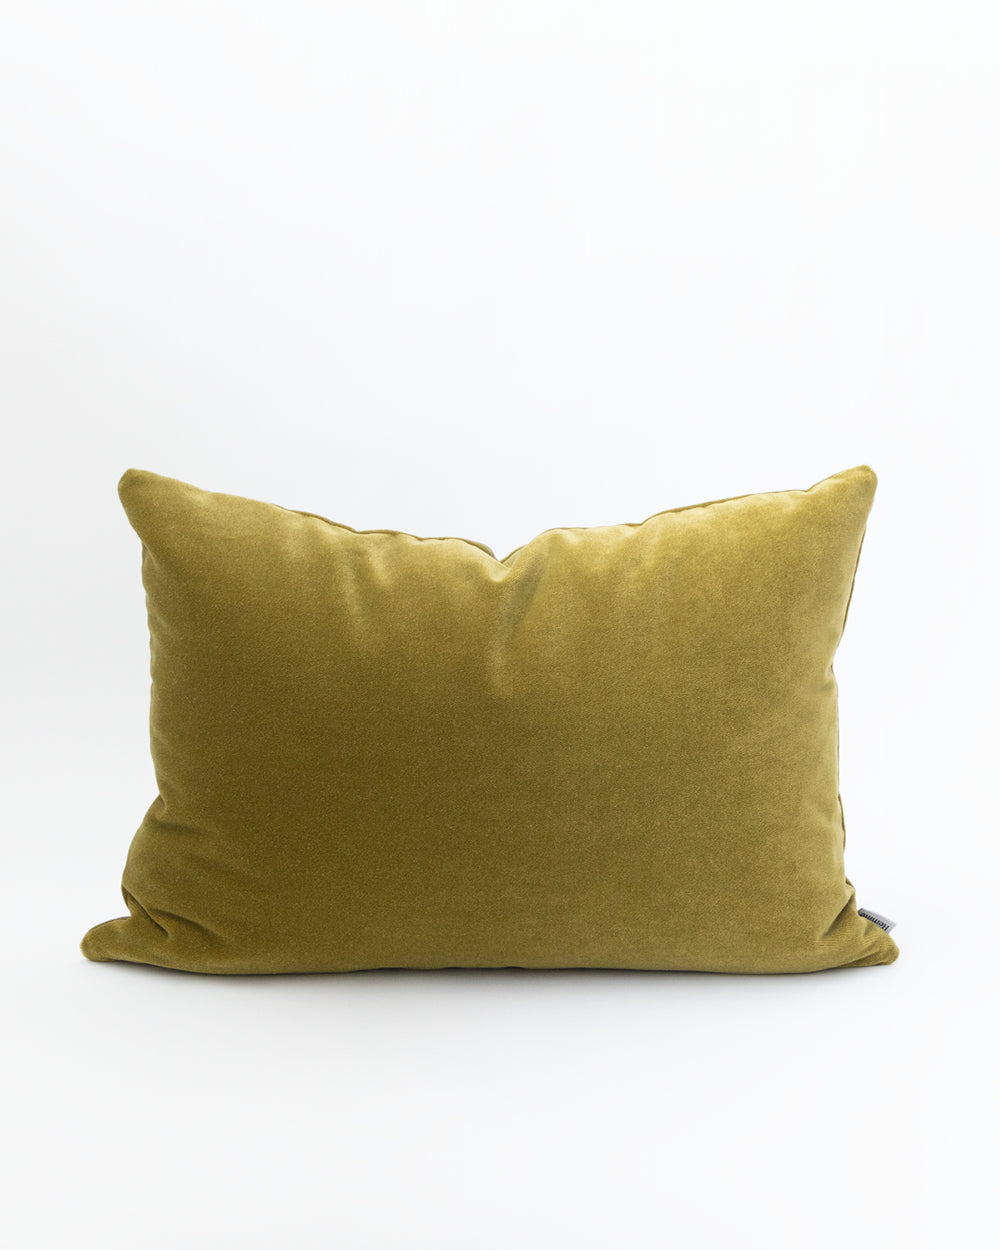 Rectangle green moss velvet pillow